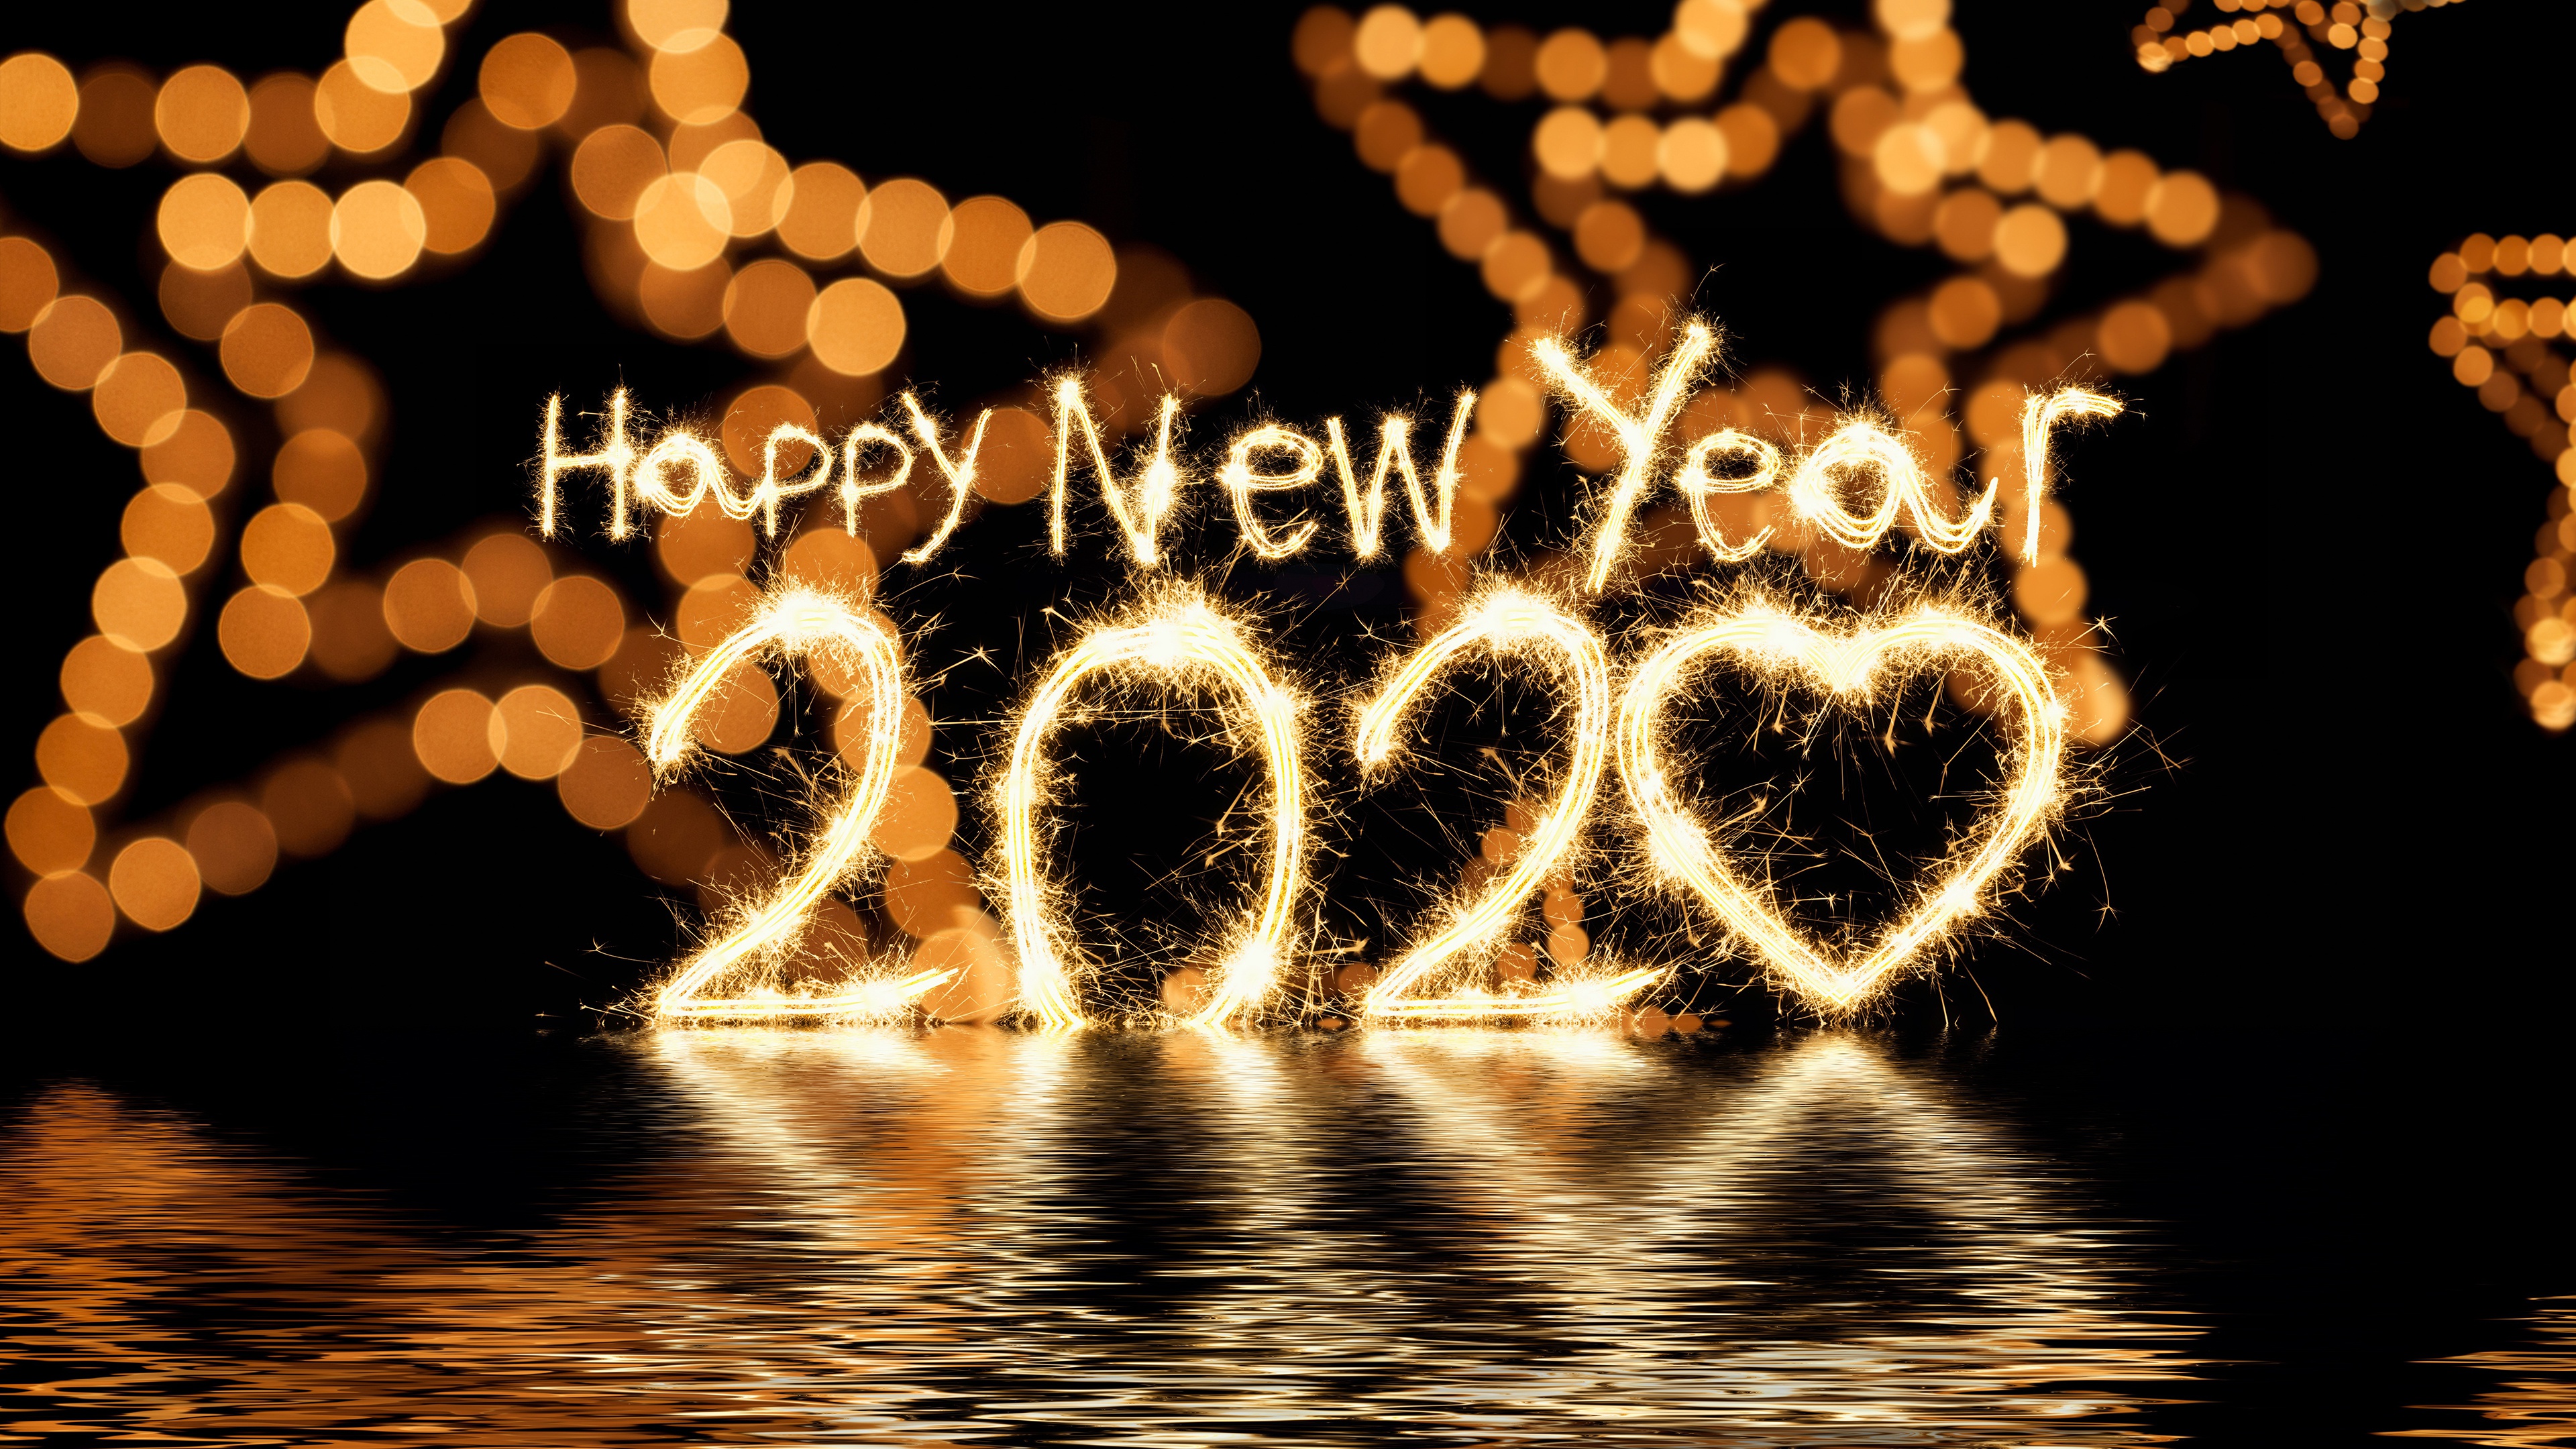 Happy New Year 2020 Hd Wallpaper 4k For Desktop - Happy New Year 2020 4k -  3840x2160 Wallpaper 